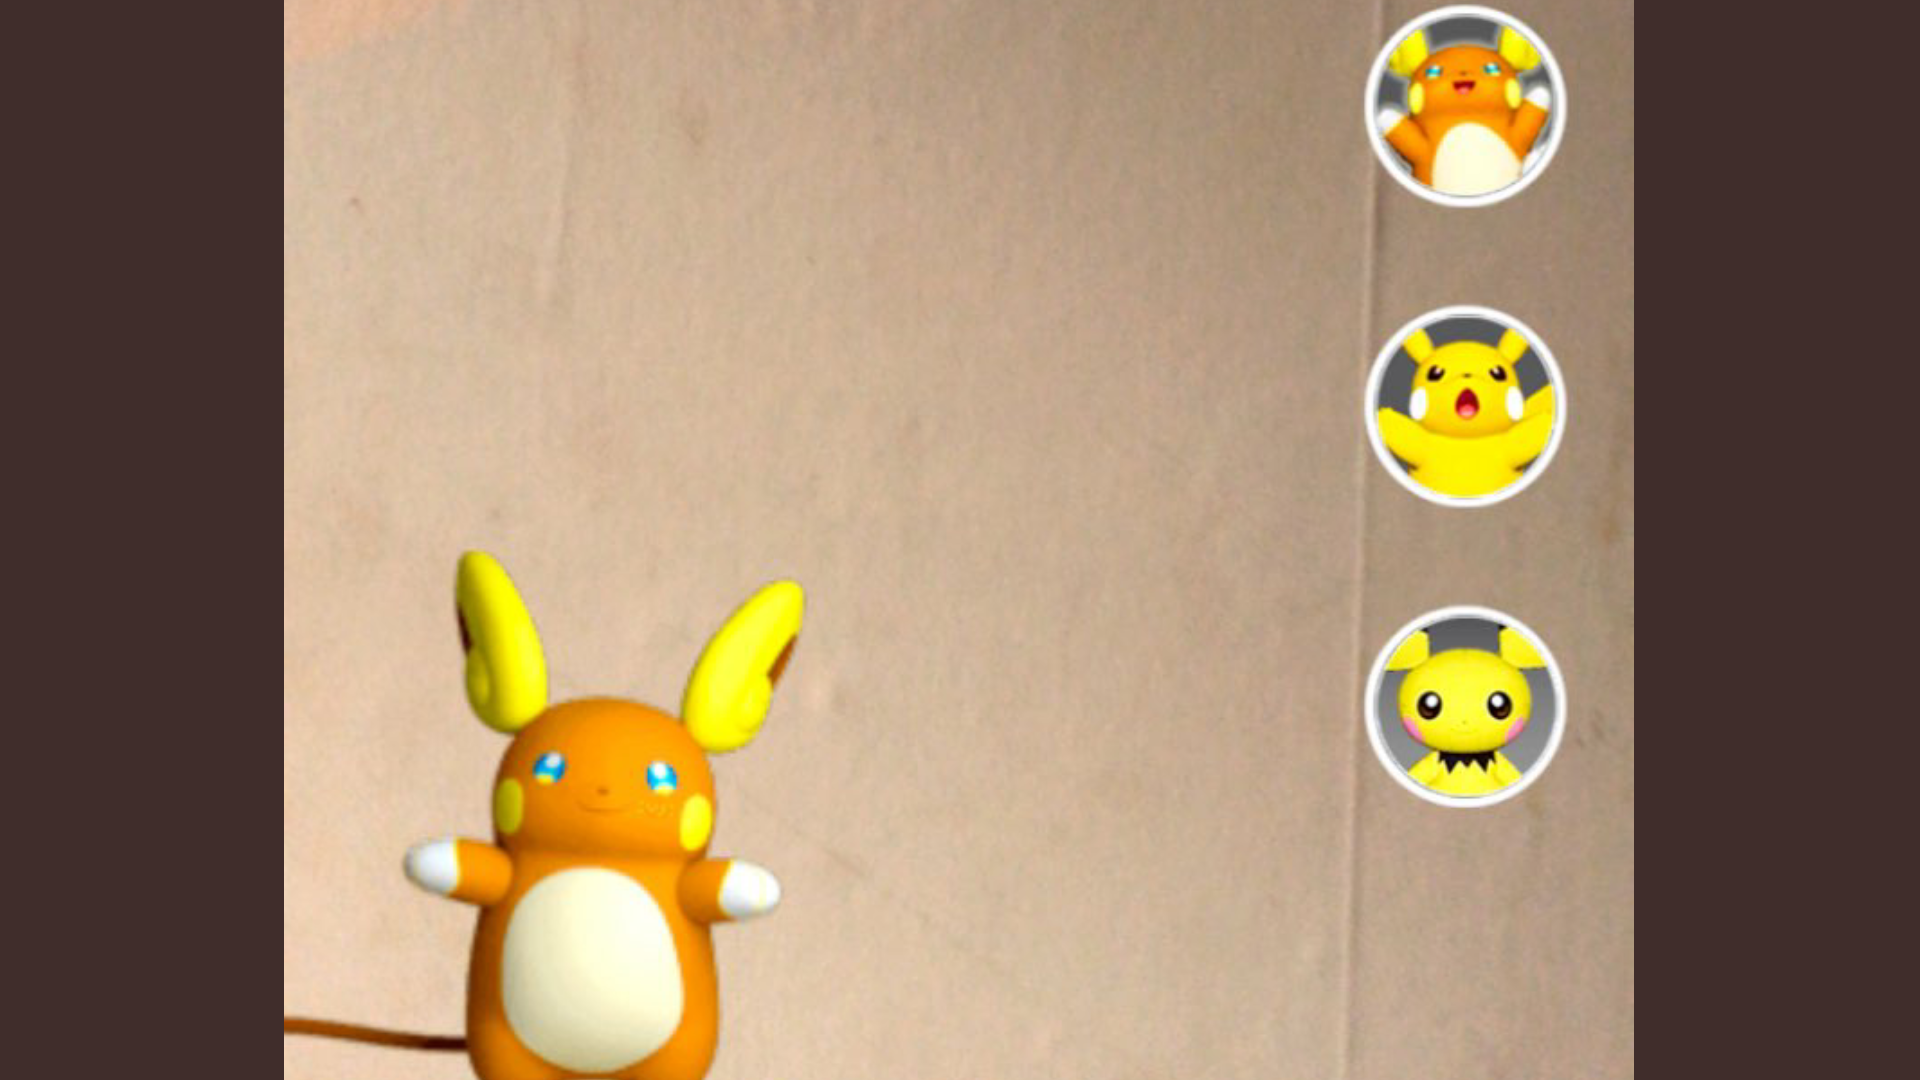 El filtro de Pokémon regresa a Snapchat, y esta vez incluye también a Pichu y Raichu de Alola